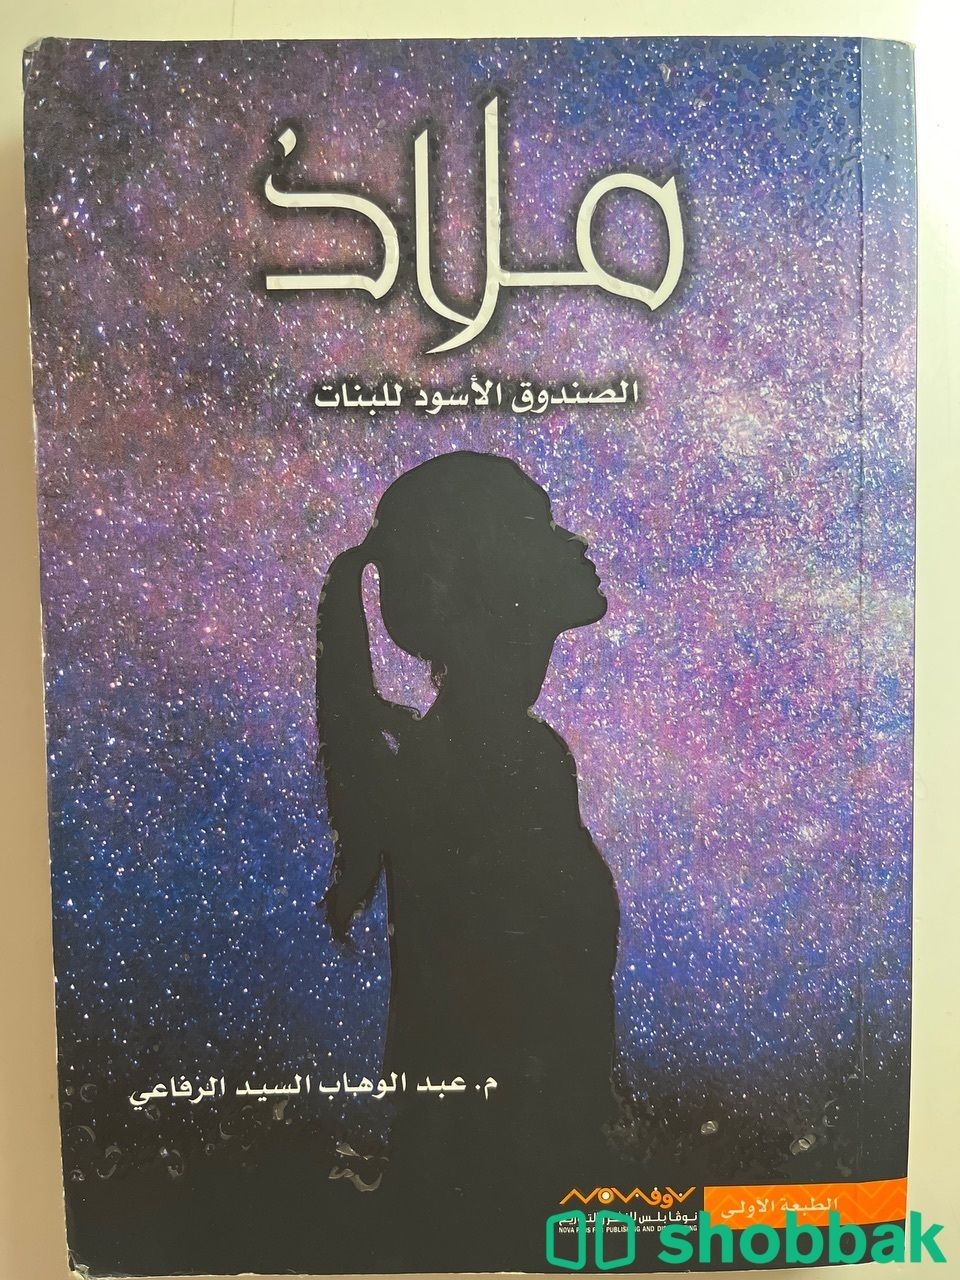 كتاب ملاذ مستعمل استعمال نظيف Shobbak Saudi Arabia